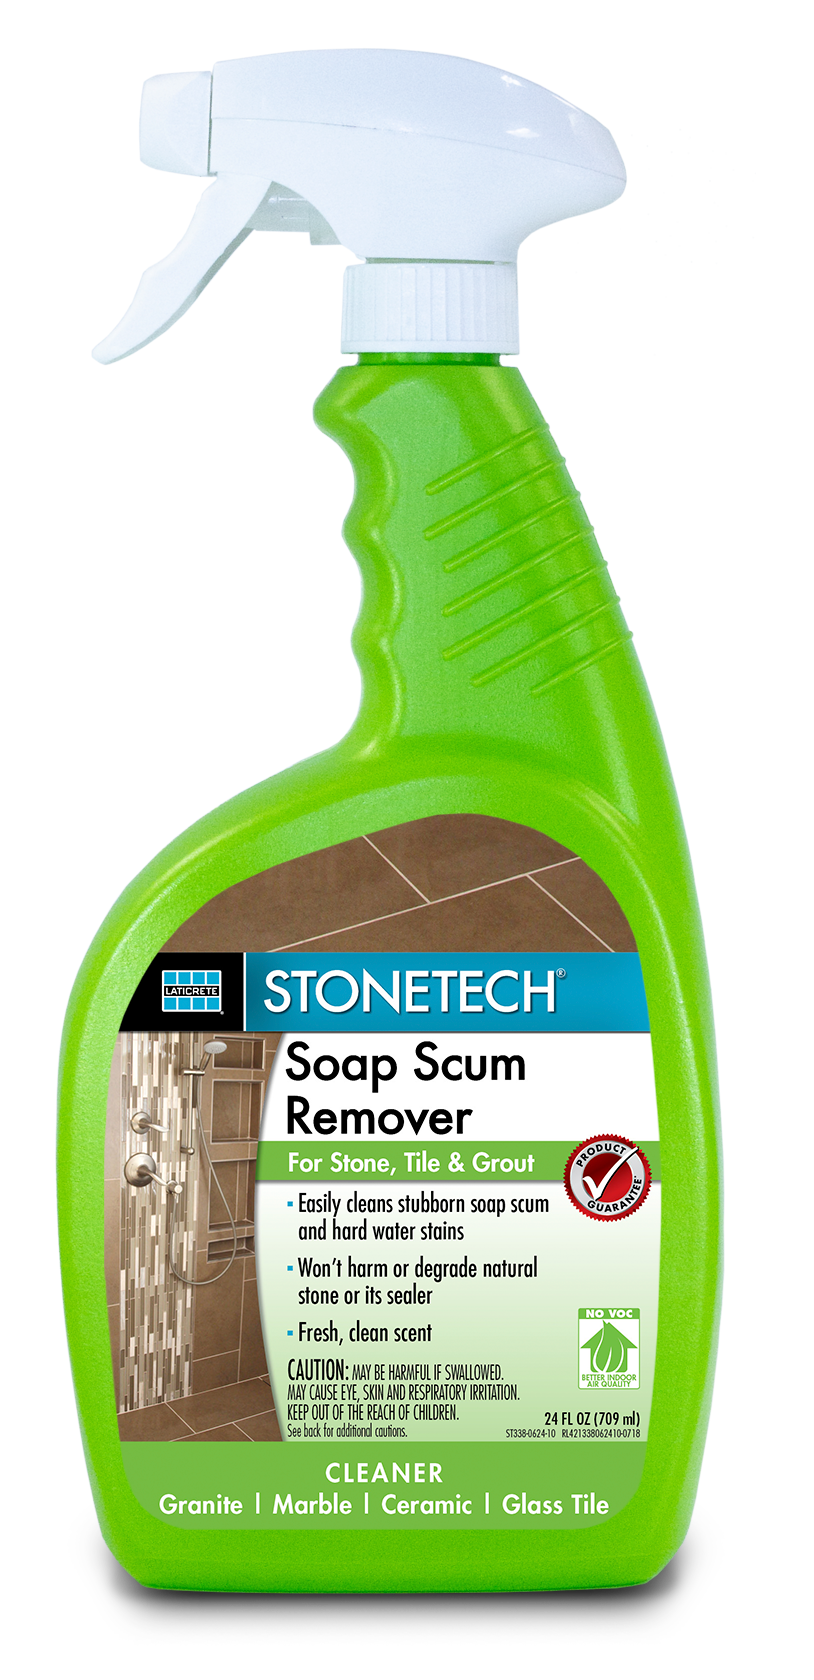 STONETECH Soap Scum Remover